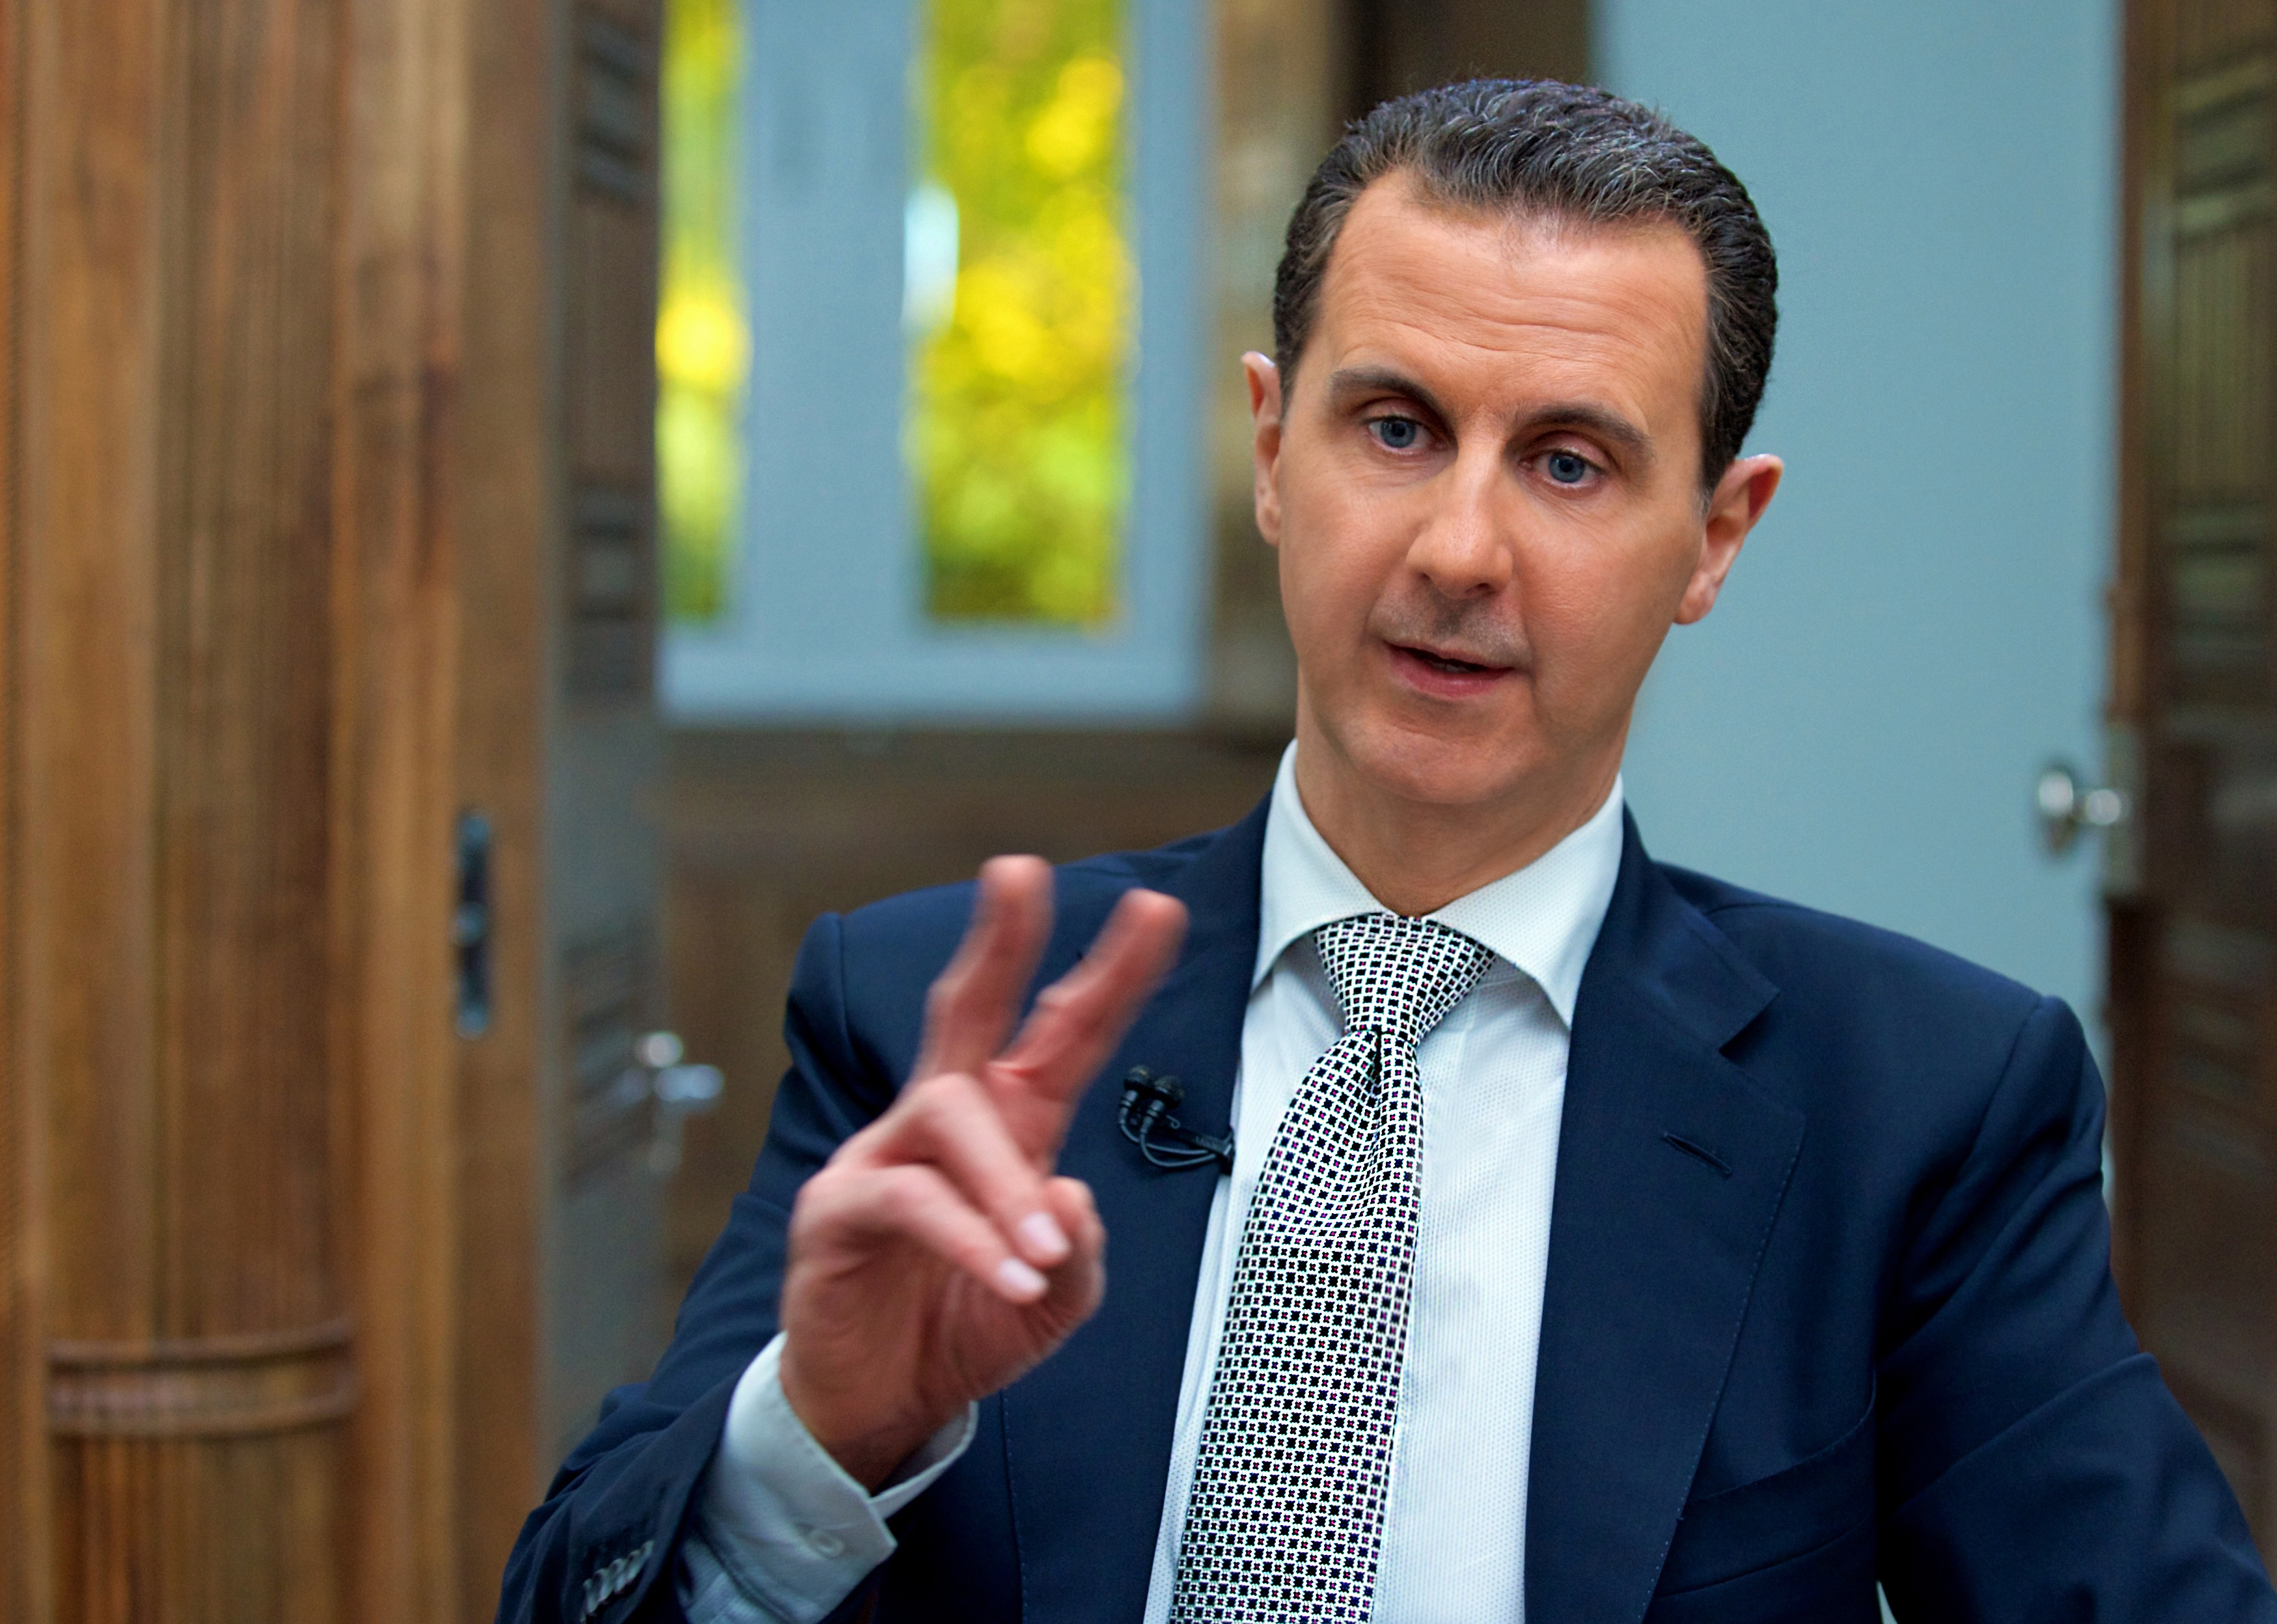 Washington szerint az Aszad-kormány továbbra is képes vegyi fegyverek előállítására és használatára